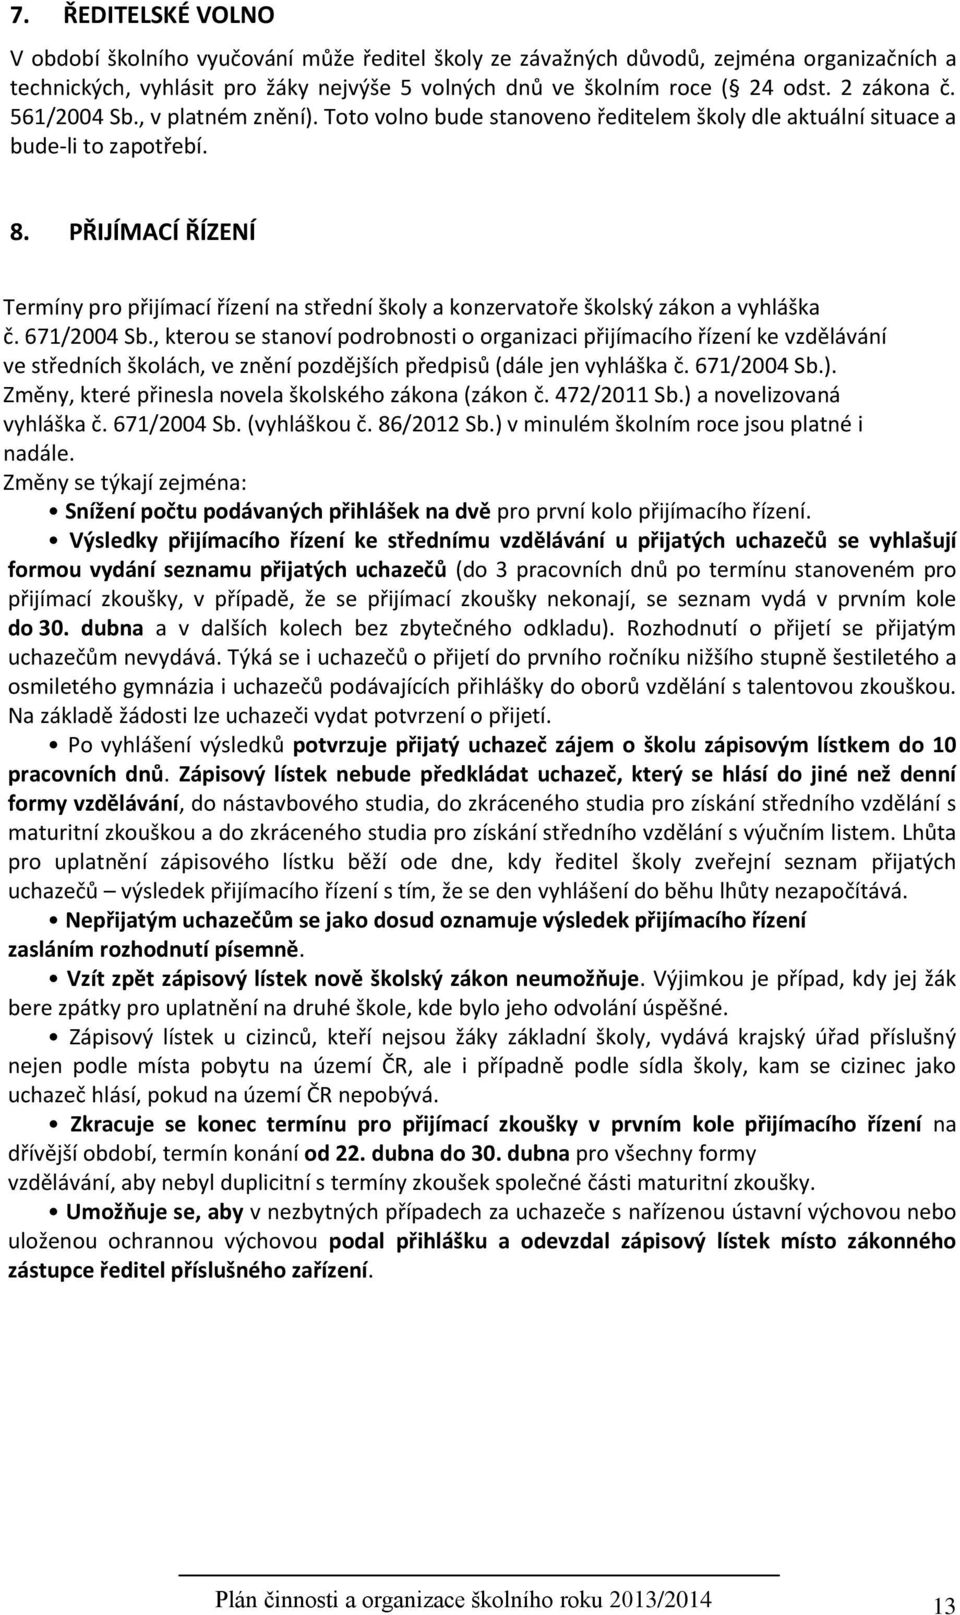 PŘIJÍMACÍ ŘÍZENÍ Termíny pro přijímací řízení na střední školy a konzervatoře školský zákon a vyhláška č. 671/2004 Sb.